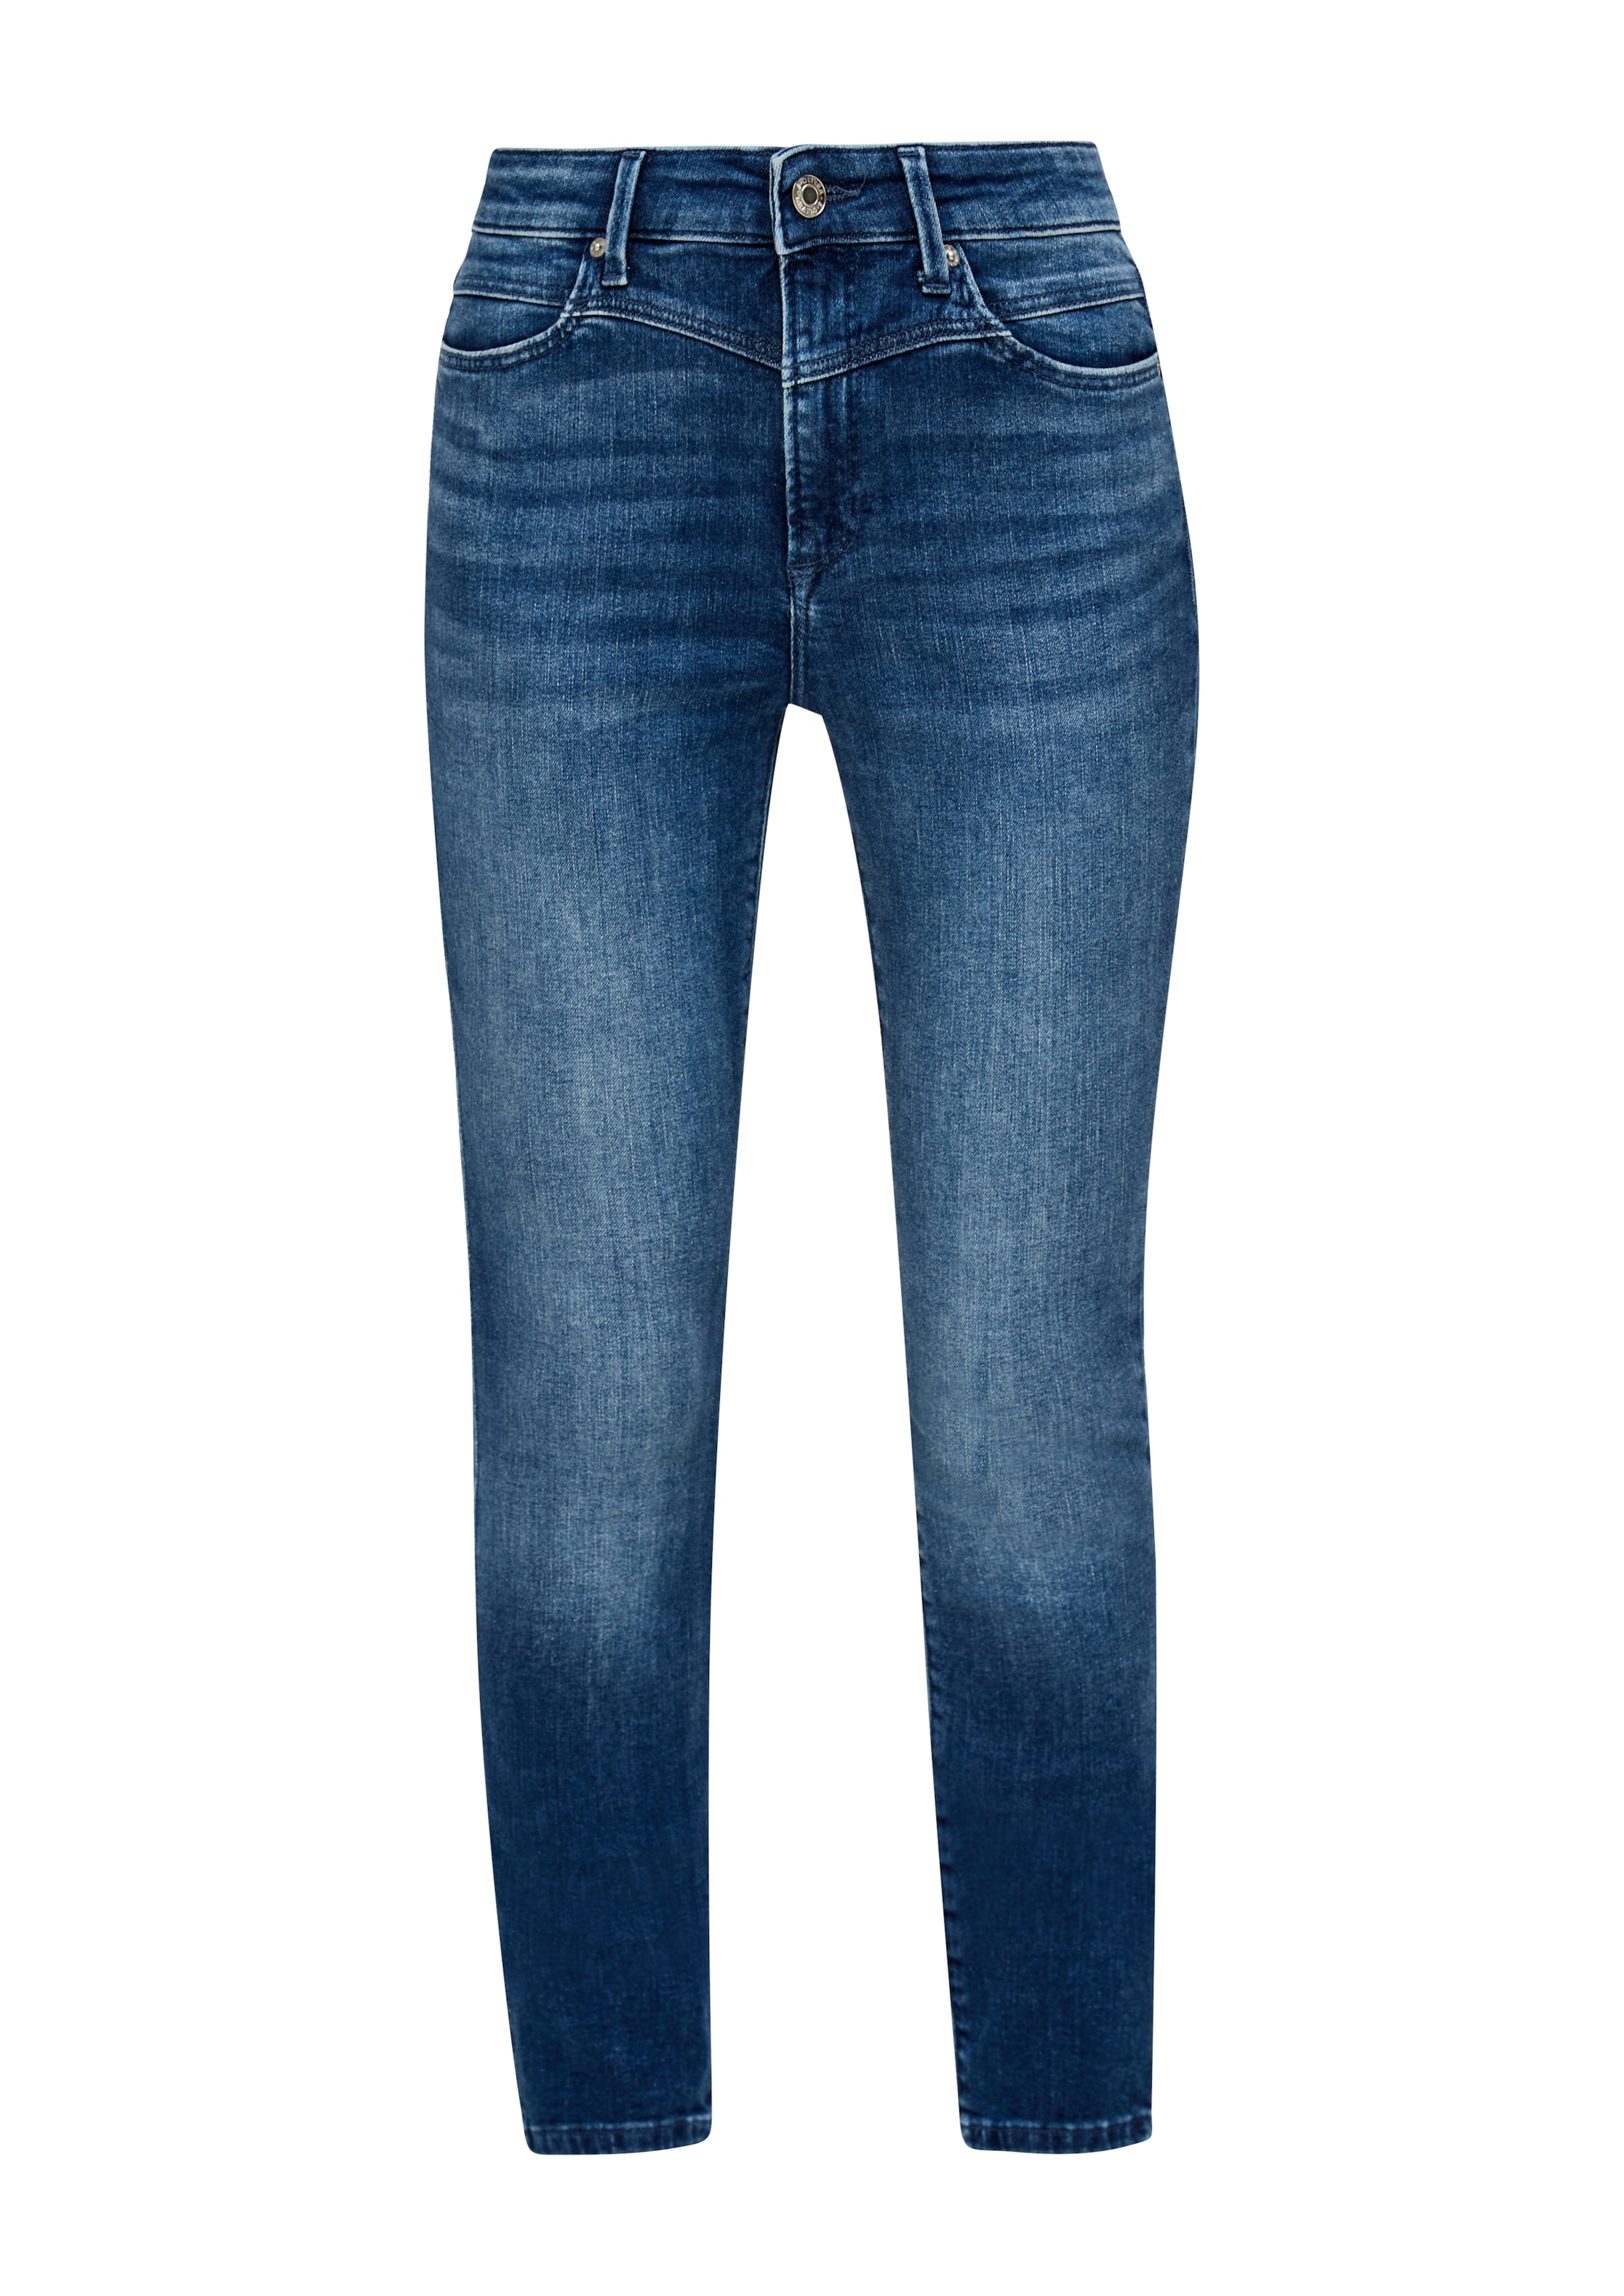 s.Oliver Skinny-fit-Jeans, in bei OTTOversand coolen, unterschiedlichen Waschungen